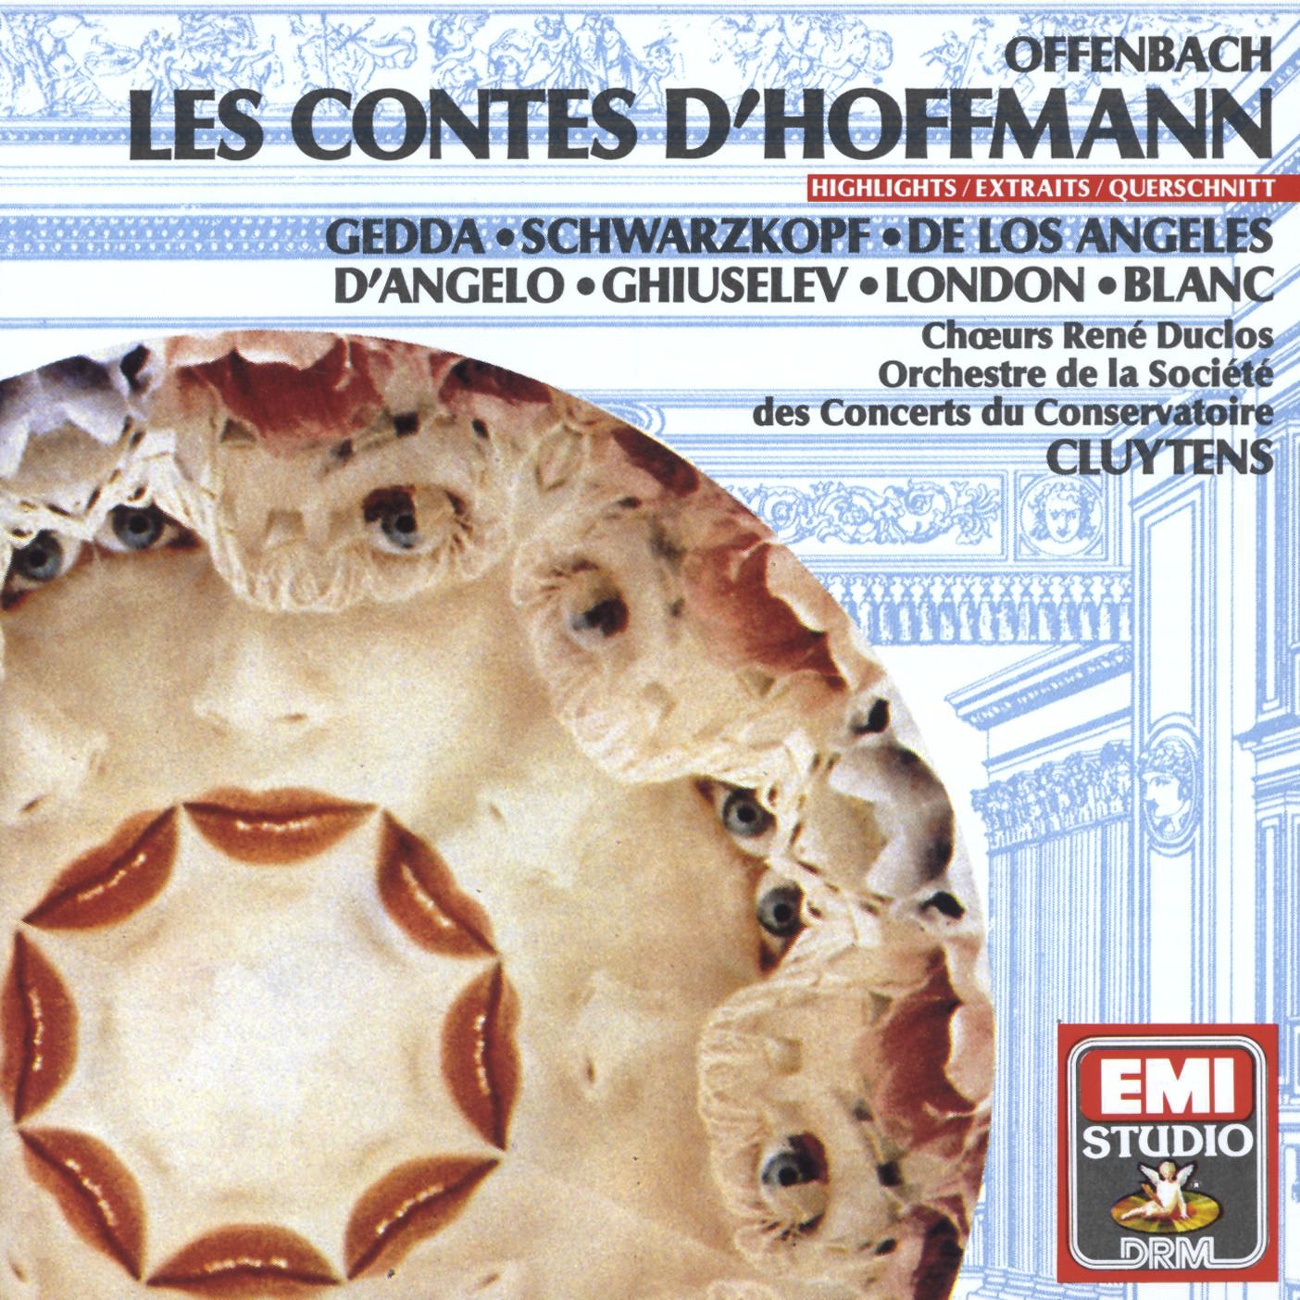 Les Contes d' Hoffmann 1989 Digital Remaster, PREMIER ACTE ACT ONE ERSTER AKT: Chanson et sce ne:  Va pour Kleinzach! Le gende d